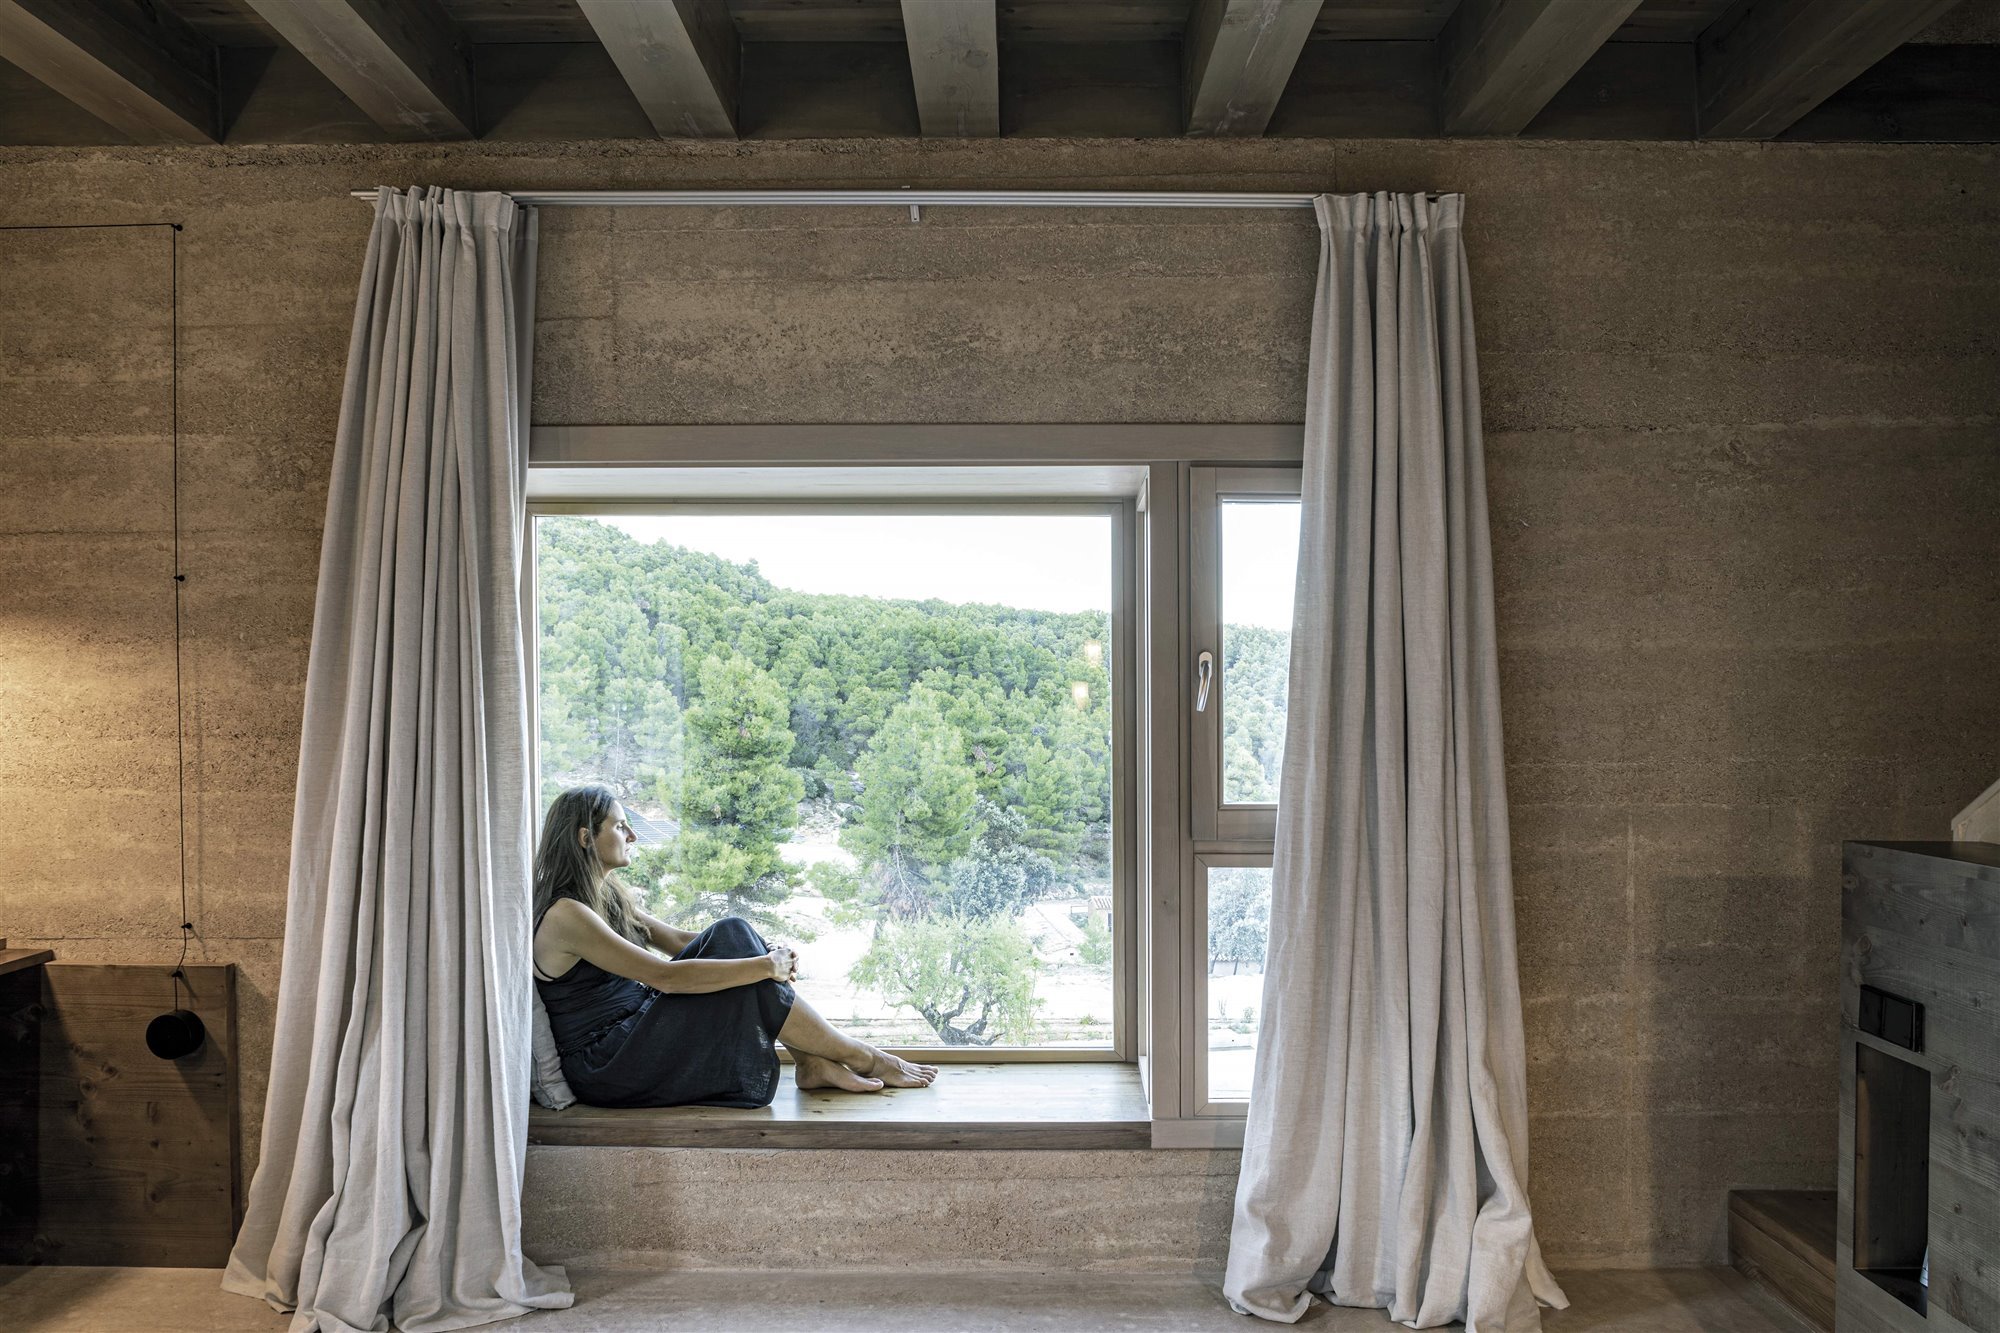 habitacion hotel en la naturaleza minimalista ventana con cortinas largas